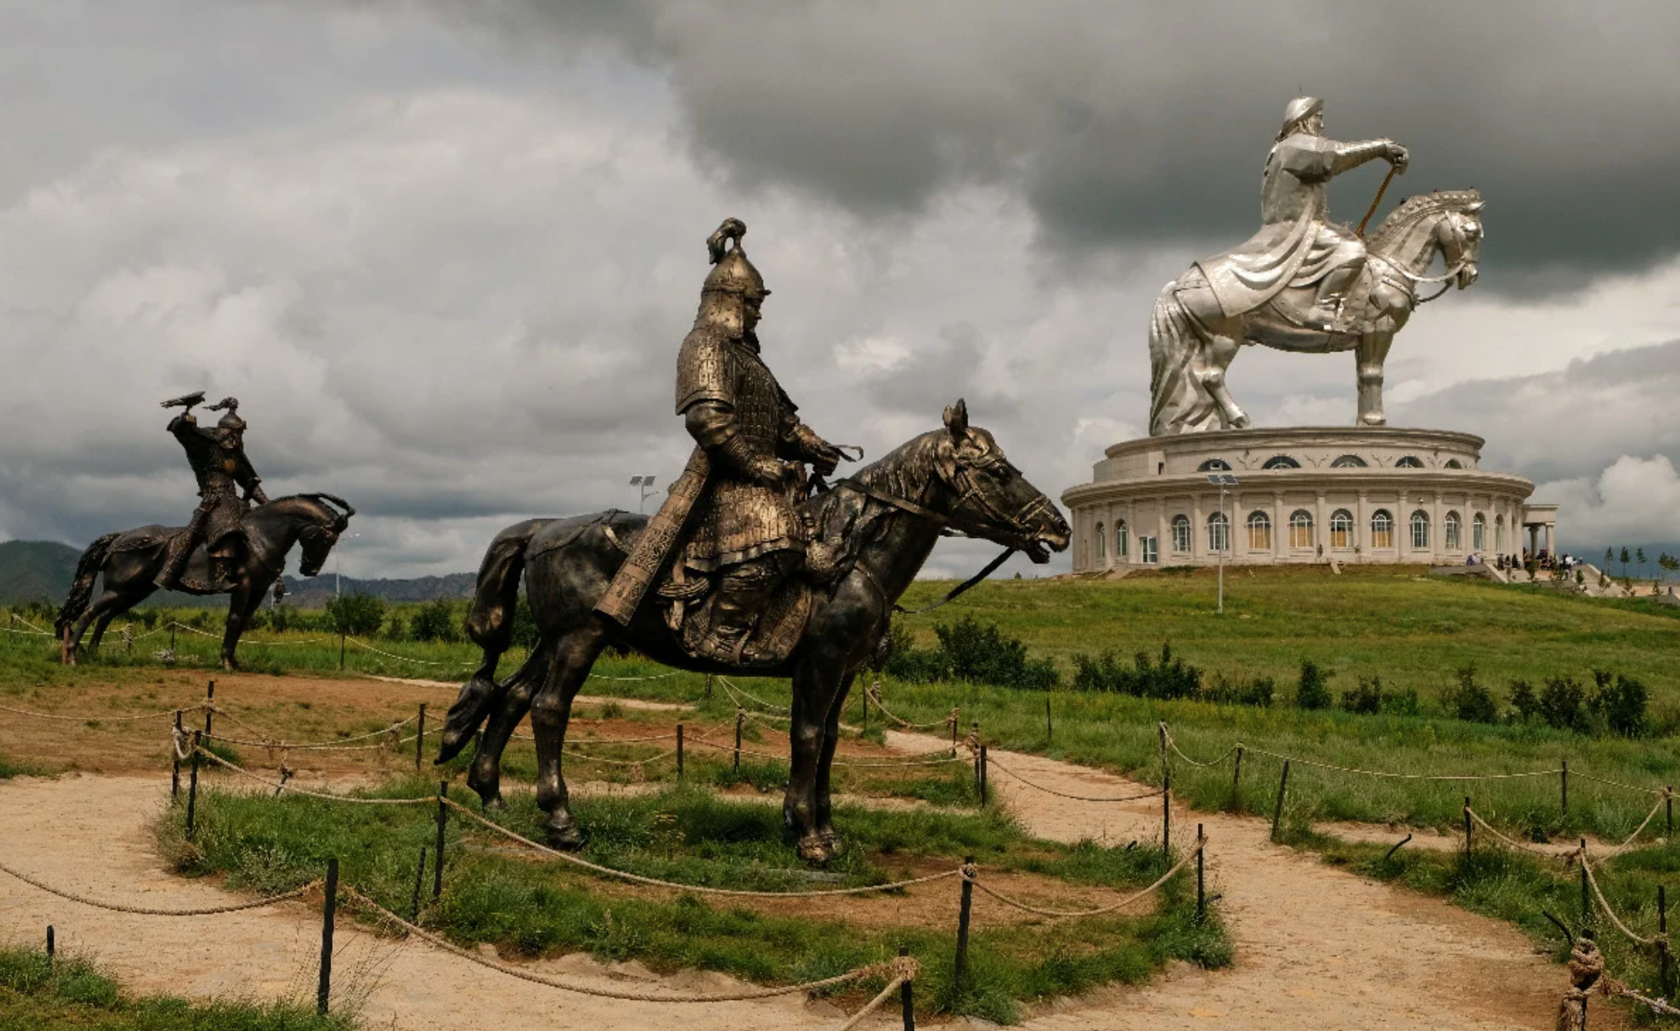 Хана улан. Памятник Чингисхану в Улан-Баторе. Статуя Чингисхана в Монголии. Конная статуя Чингисхана в Монголии. Памятник Чингисхану в Монголии в Улан Баторе.